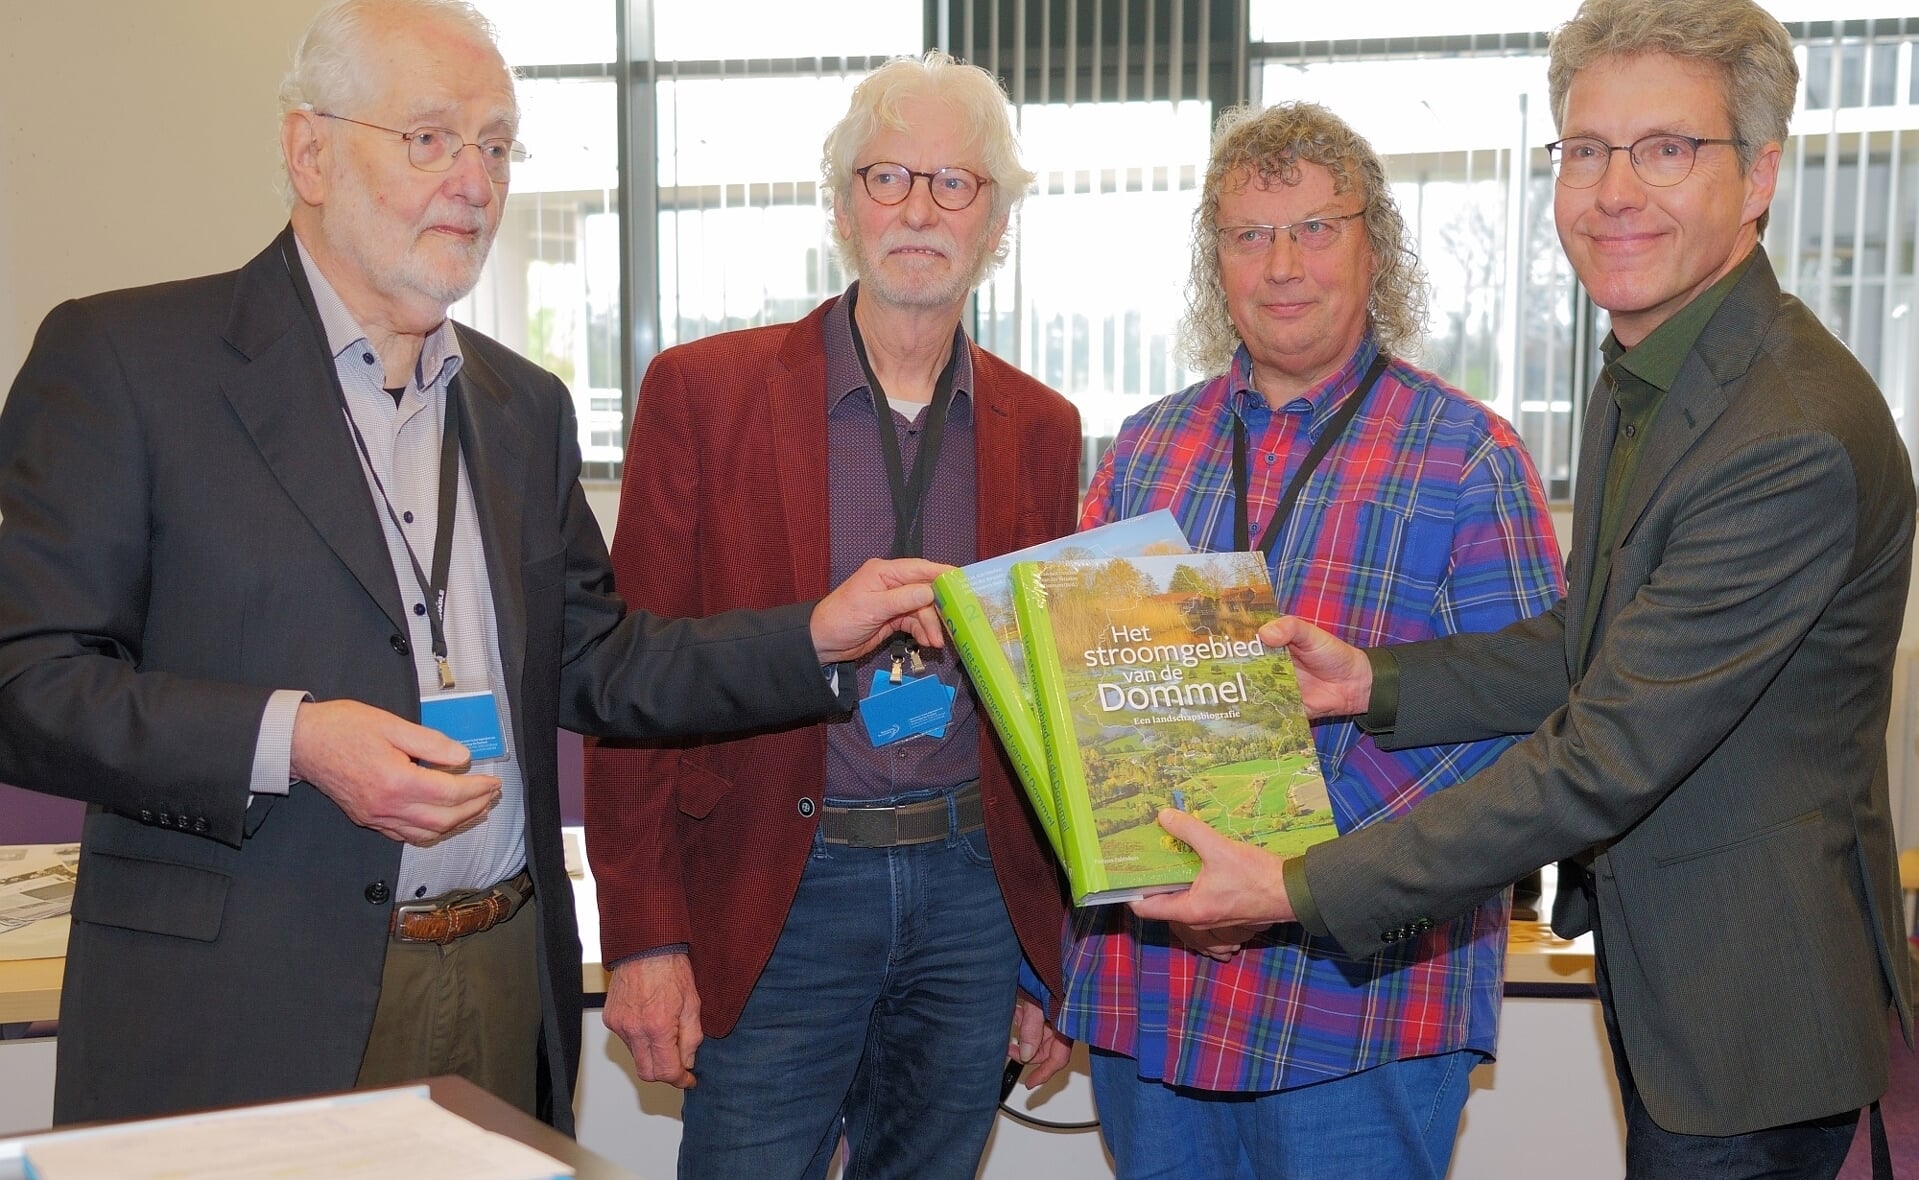 De Landschapsbiografie over de Dommel werd aangeboden aan Joris Hogenboom, directeur Brabants Landschap. V.l.n.r.: Jan van der Straaten, Jan Timmers, Ger van den Oetelaar, Joris Hogenboom. 